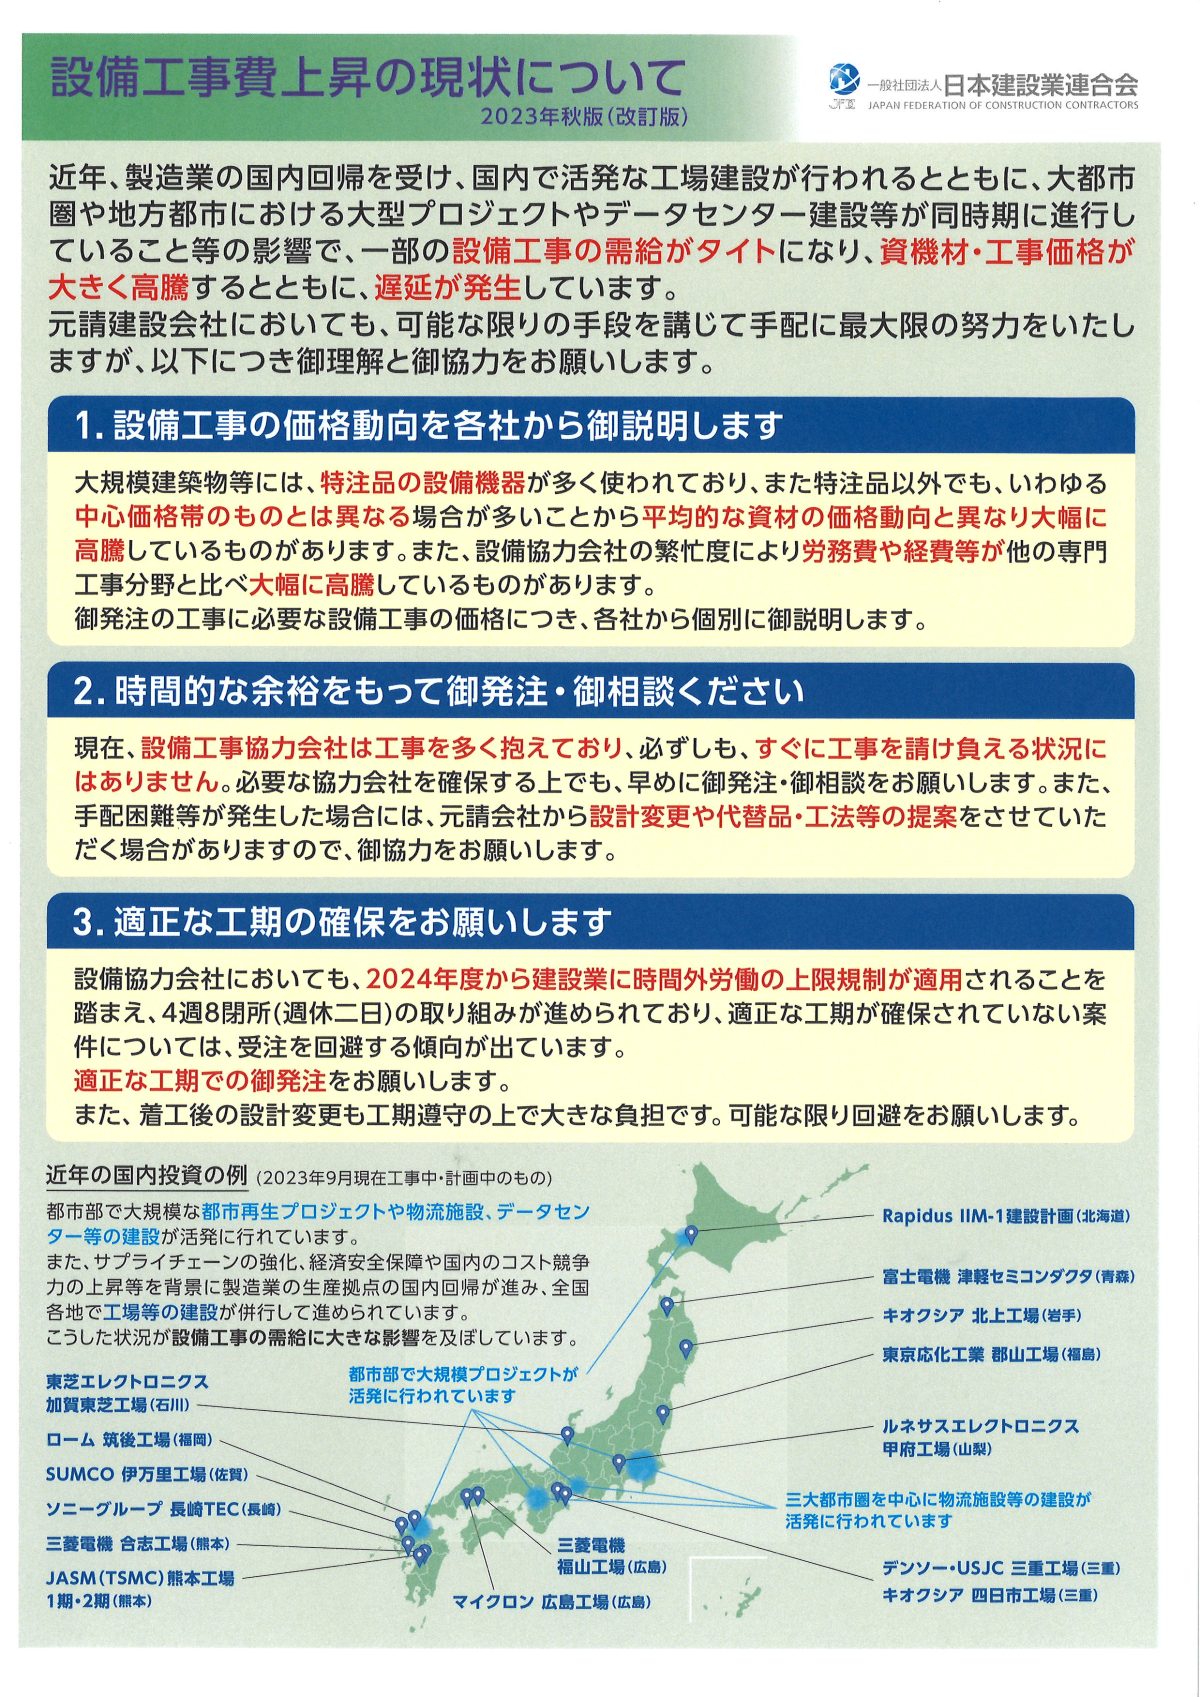 設備工事費上昇の現状について【（一社）日本建設業連合会パンフレット】